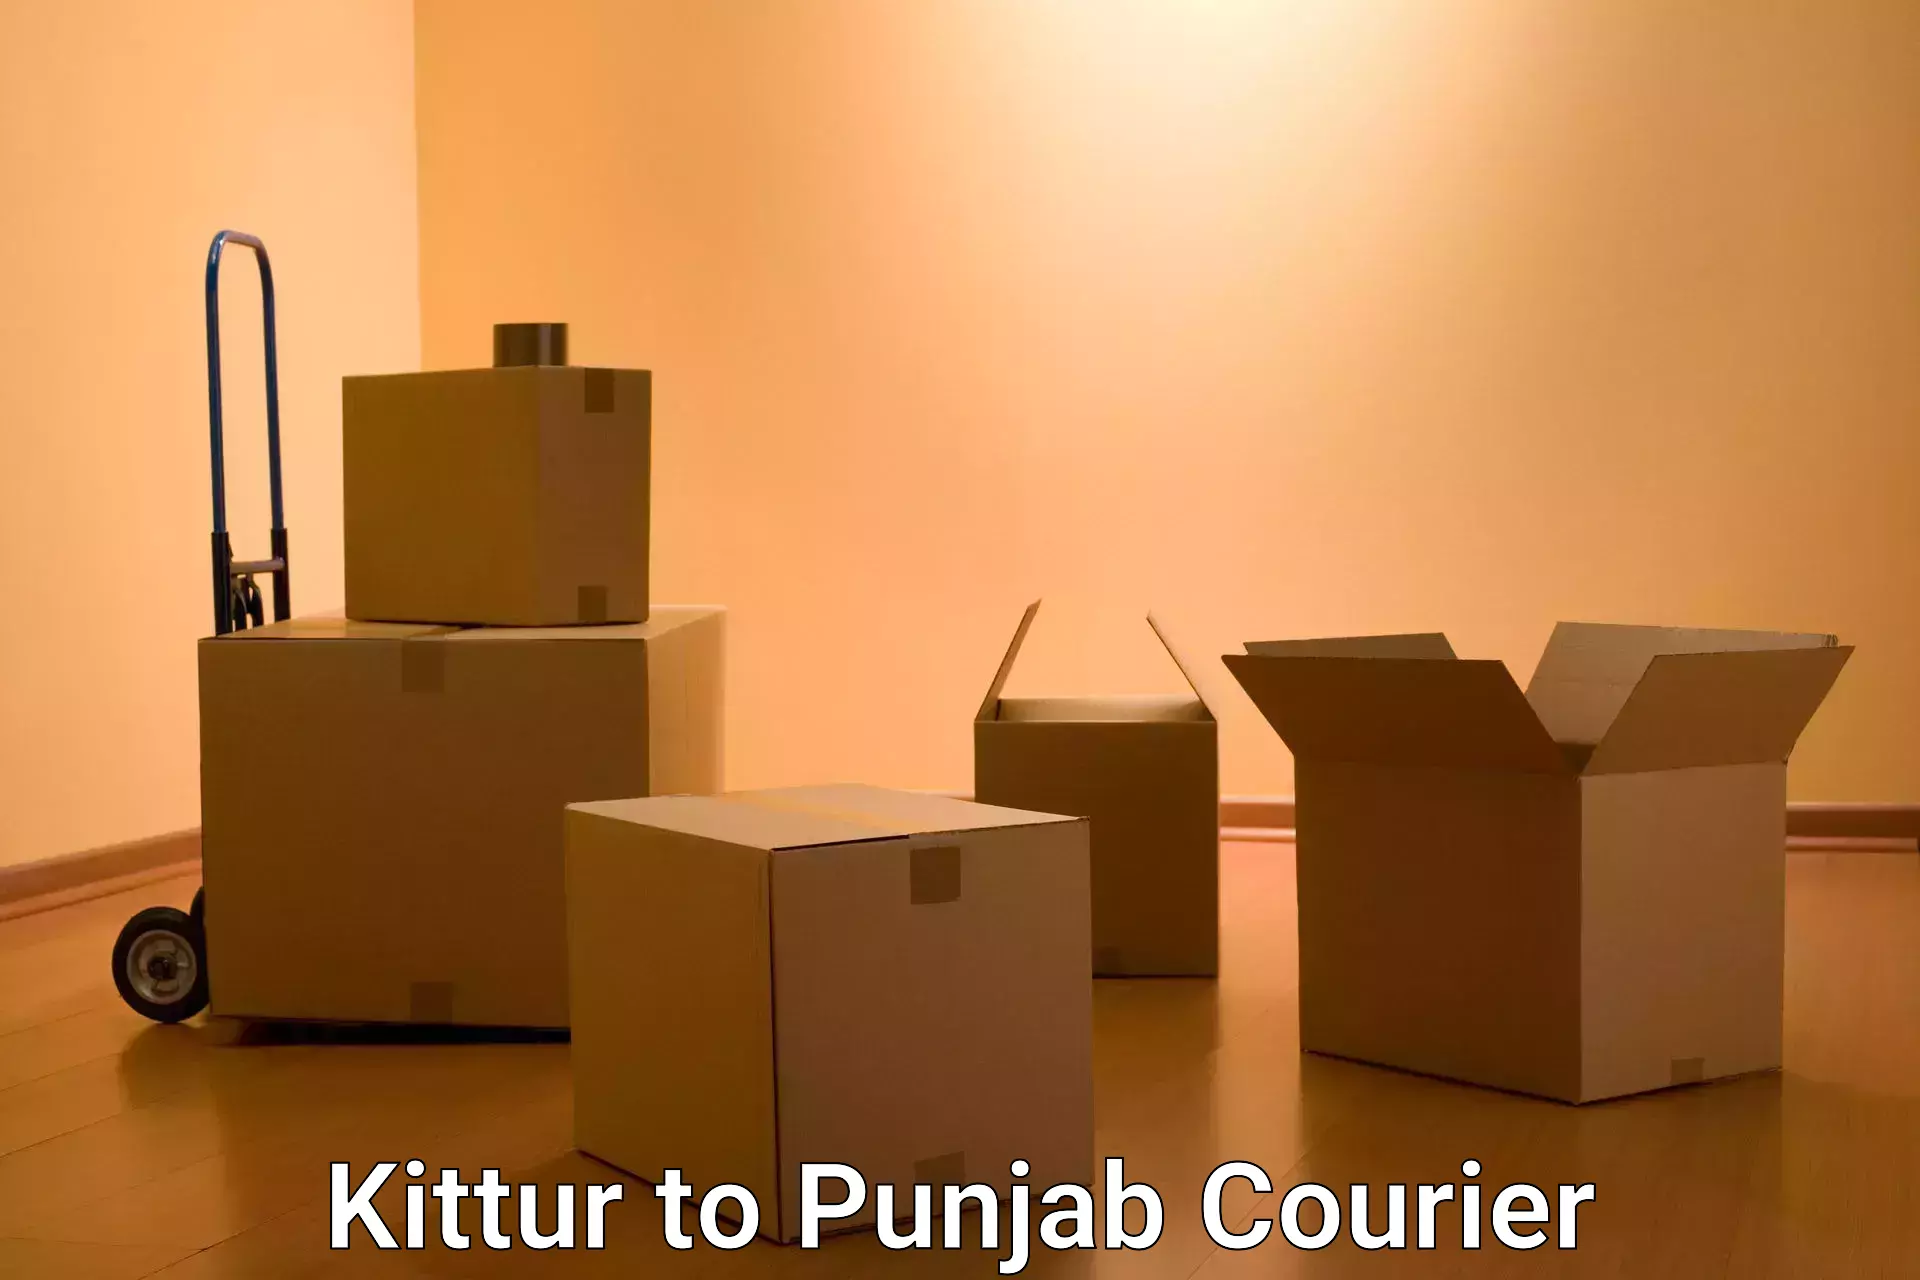 Digital courier platforms Kittur to Firozpur